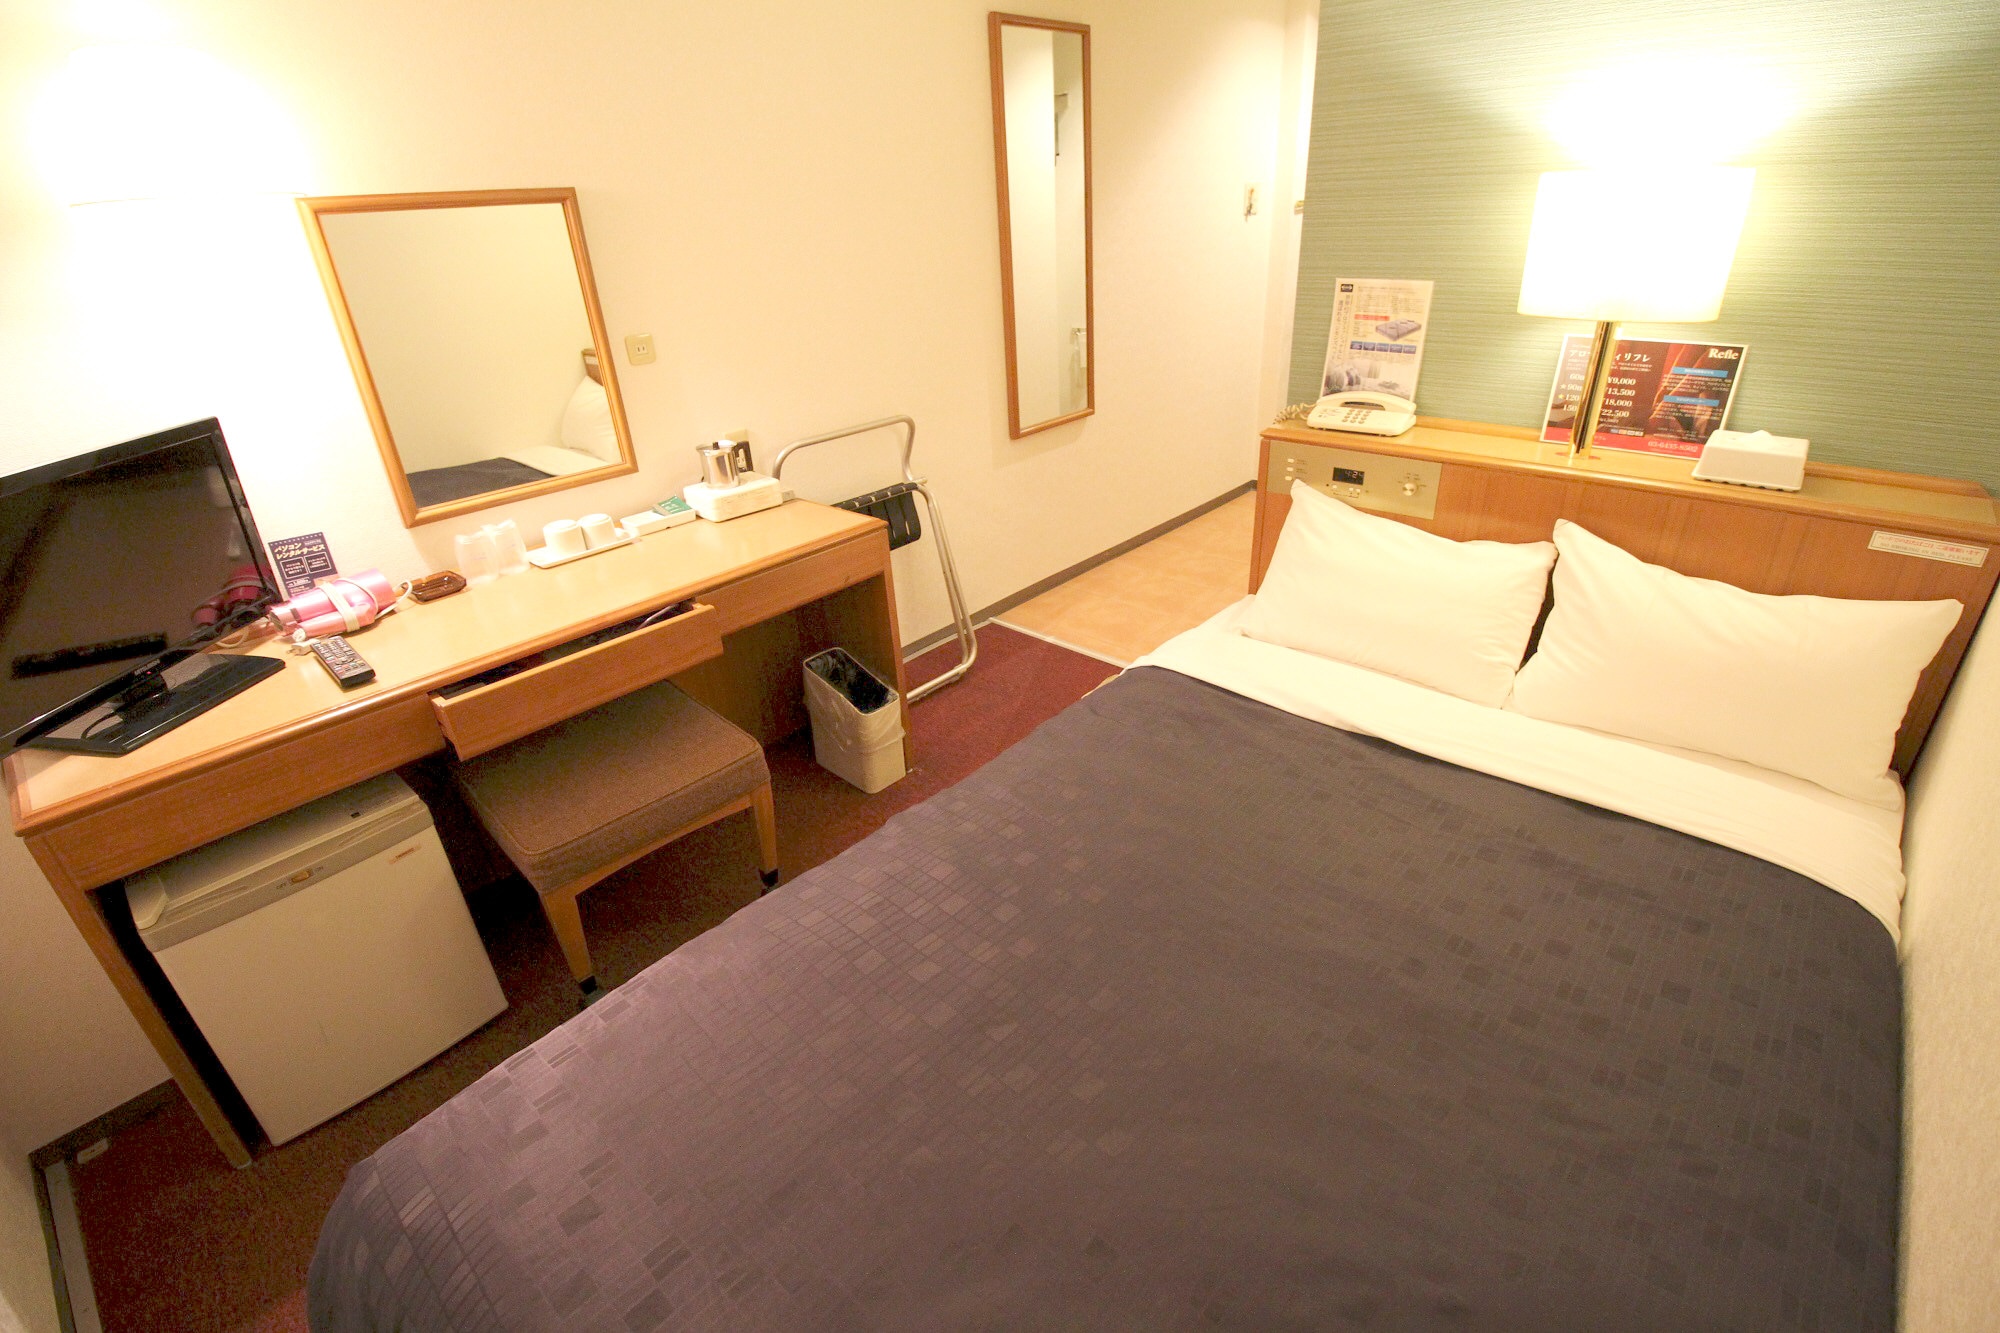 ห้องเซมิดับเบิล ■ Economy type Simmons bed with a bed width 125 cm